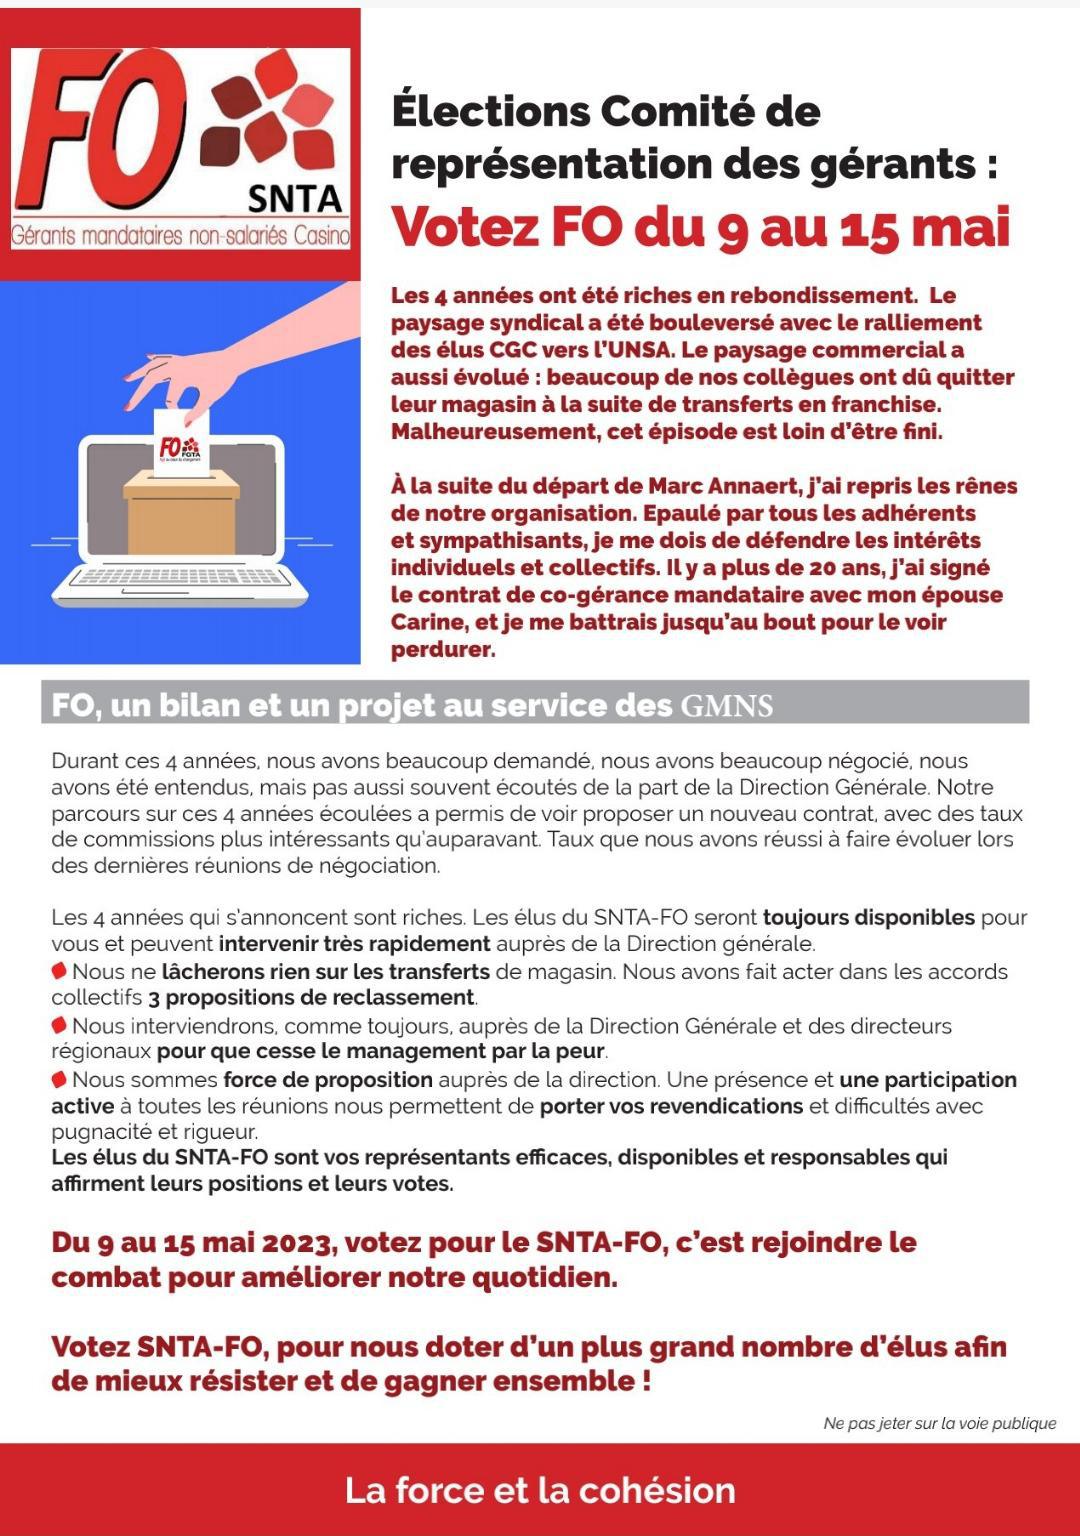 ELECTION COMITE DE REPRESENTATION DES GERANTS VOTEZ FO DU 9 AU 15 MAI 2023